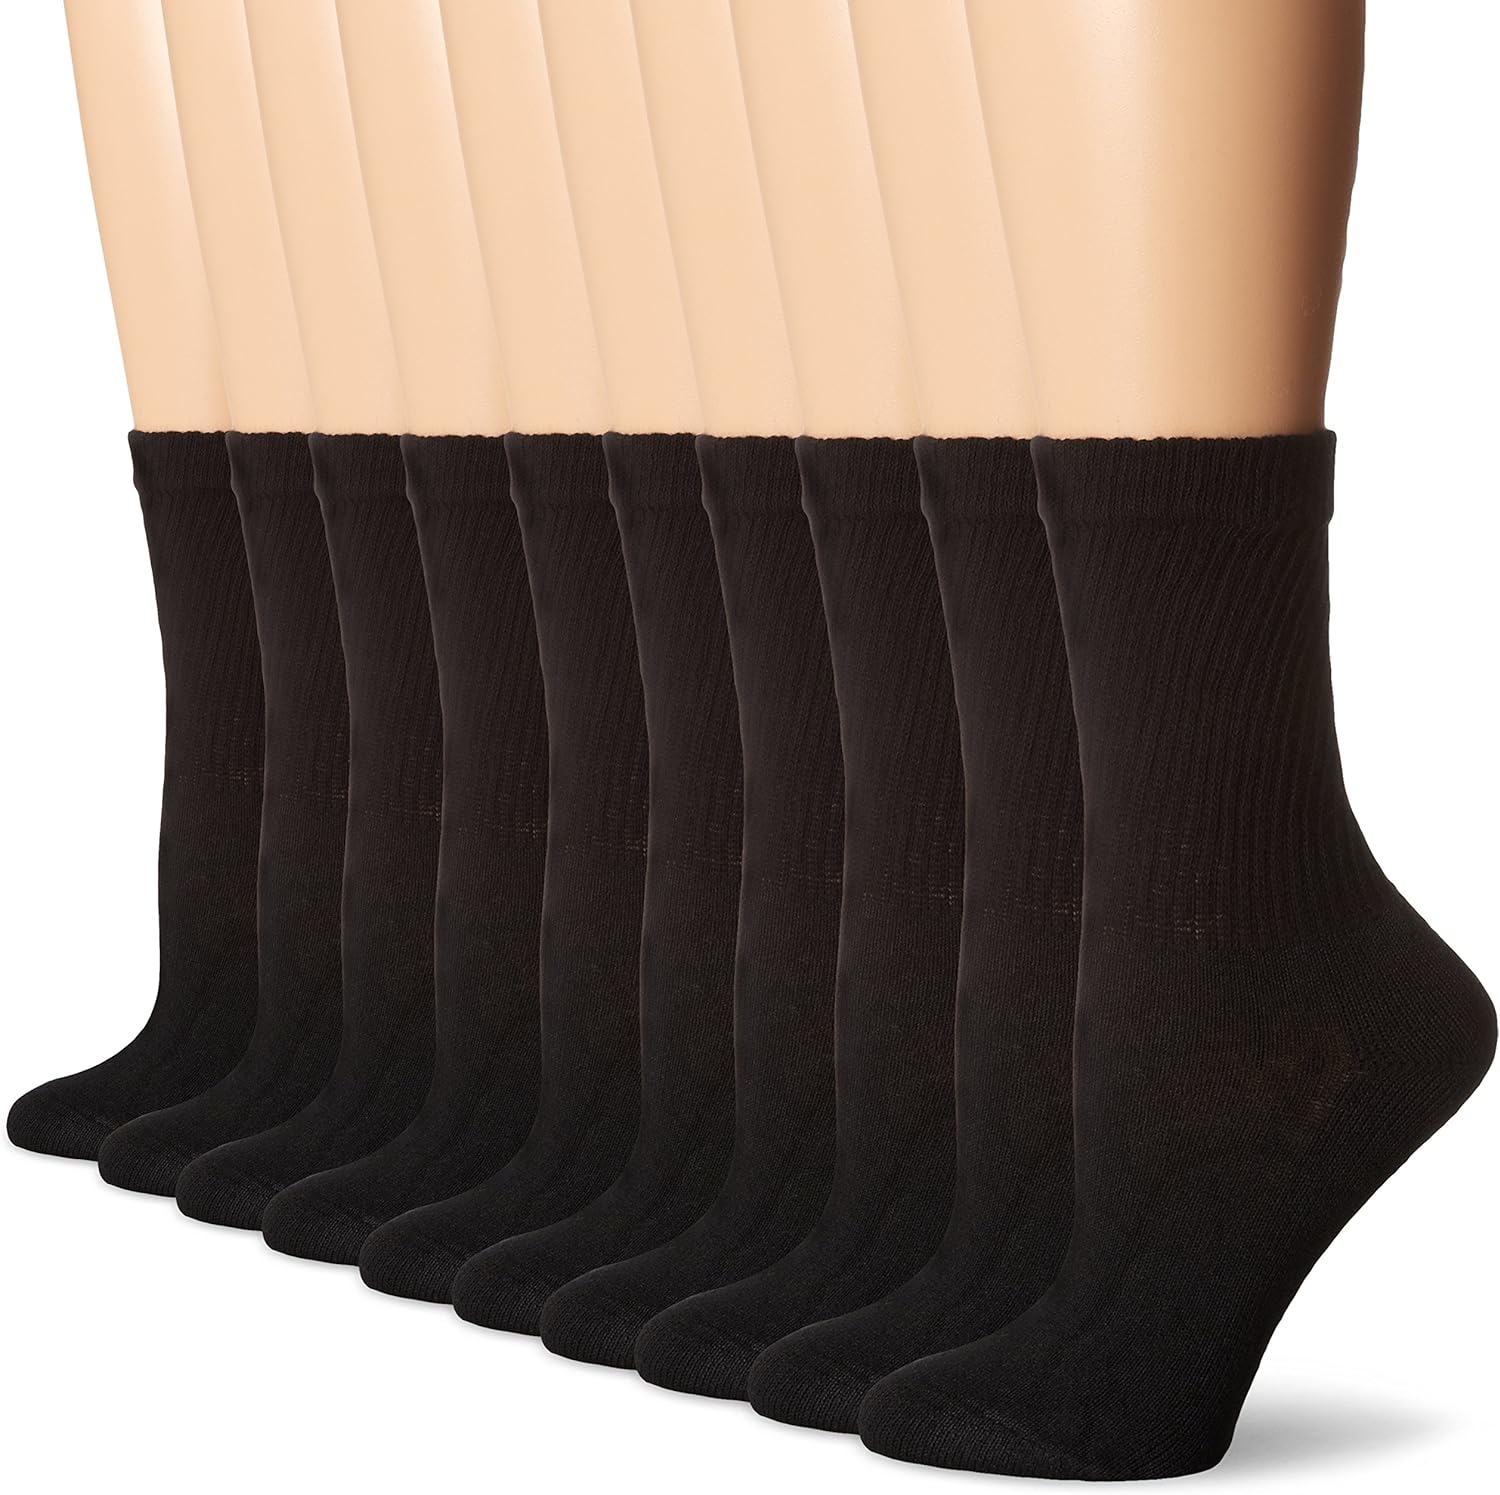 Hanes Women’s Value, Crew Soft Moisture-Wicking Socks,